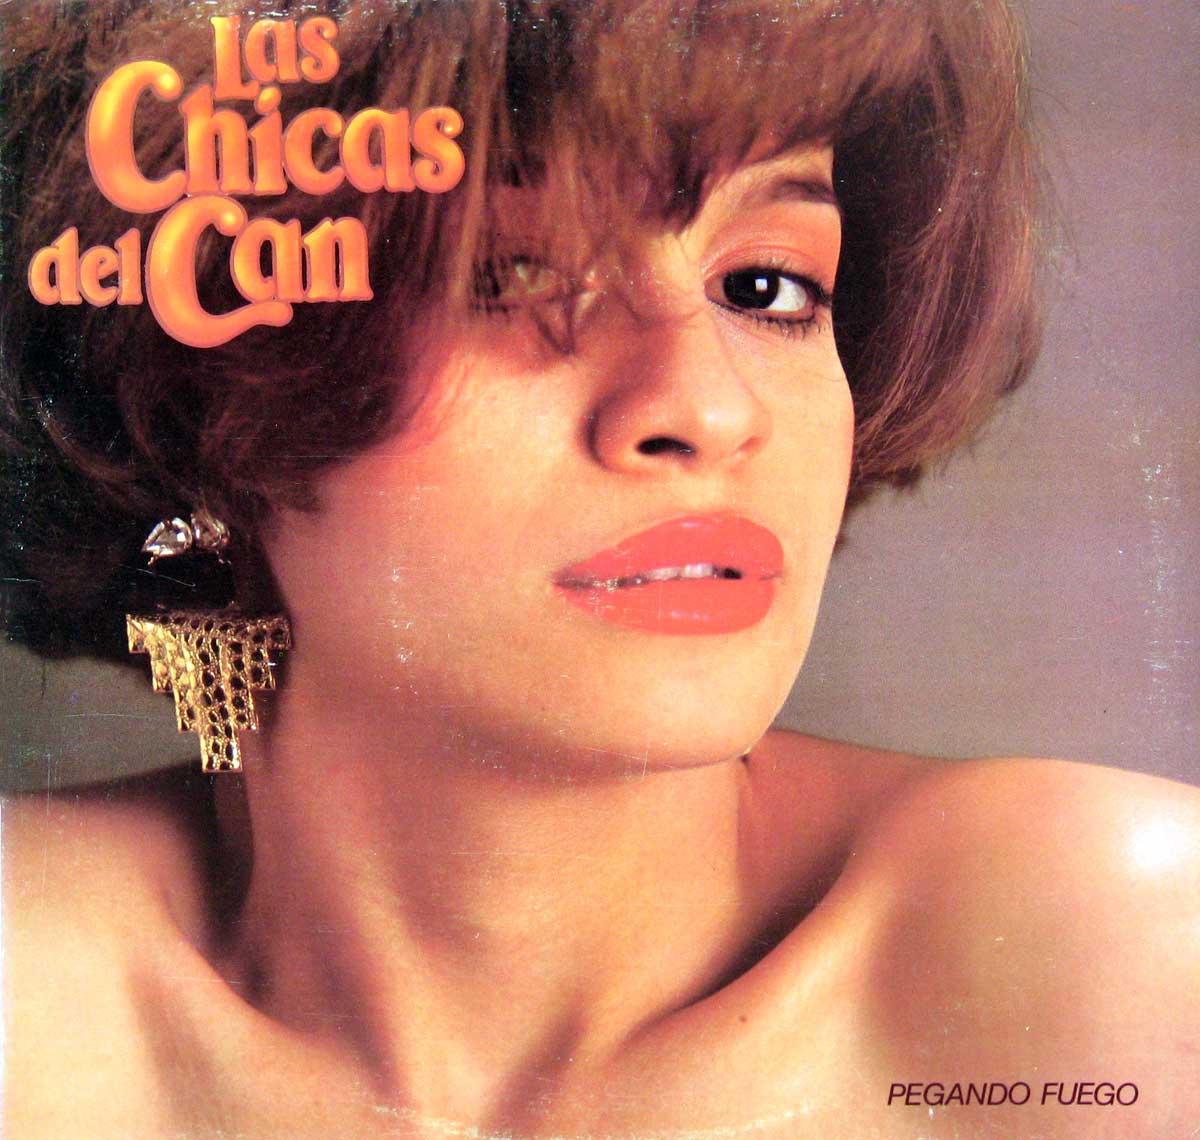 Front cover Photo of Las Chicas del Can Pegando Fuego  https://vinyl-records.nl/